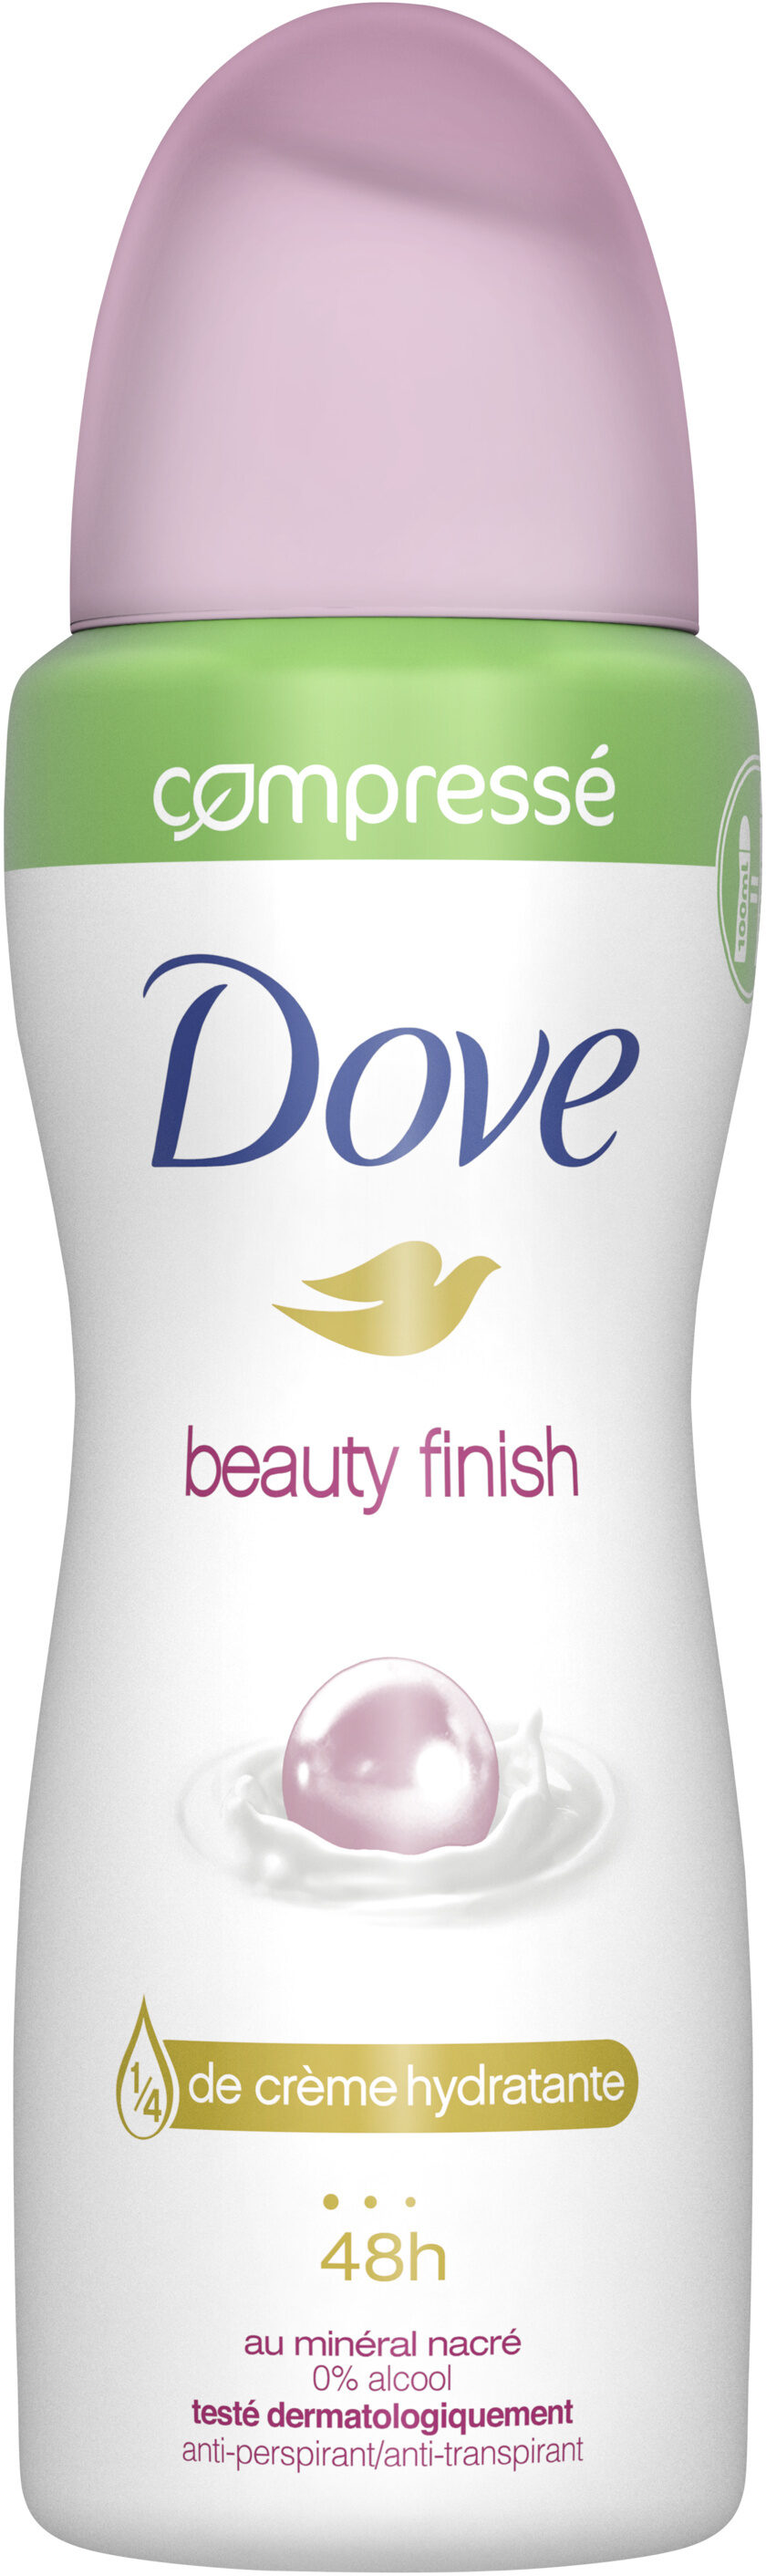 DOVE Déodorant Femme Anti-Transpirant Spray Compressé Beauty Finish 100ml - Produkt - fr